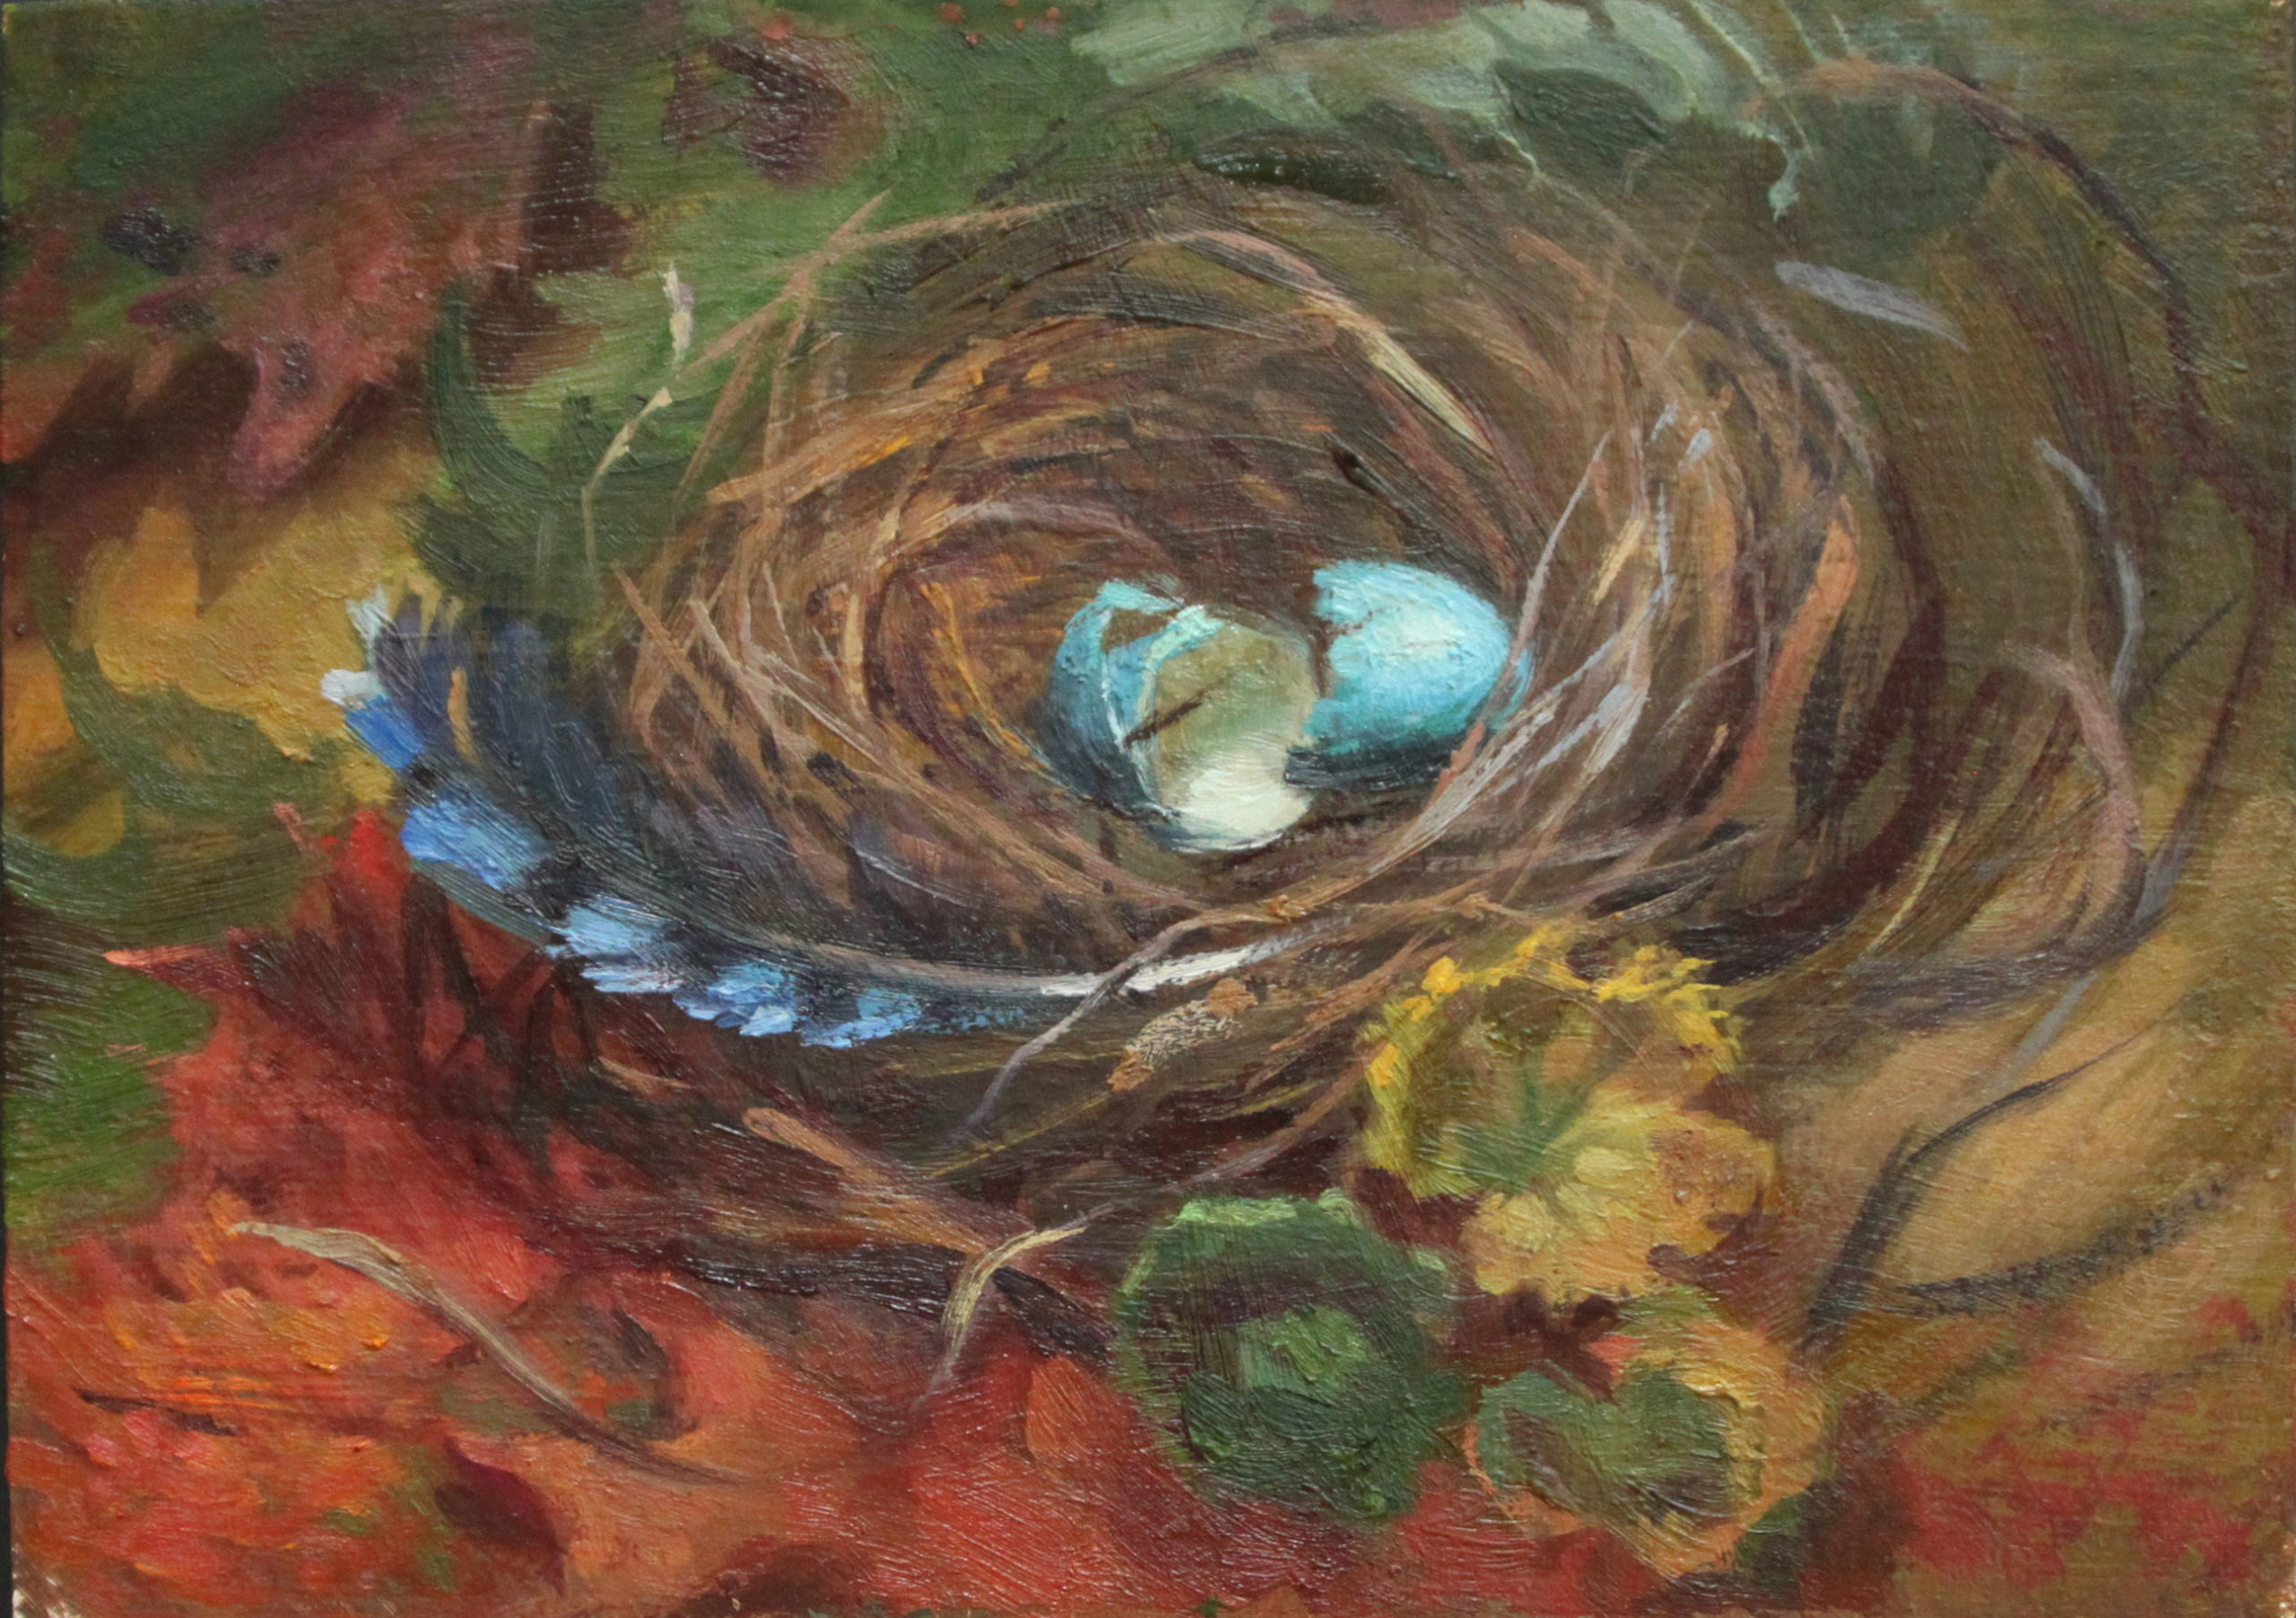 A Nest